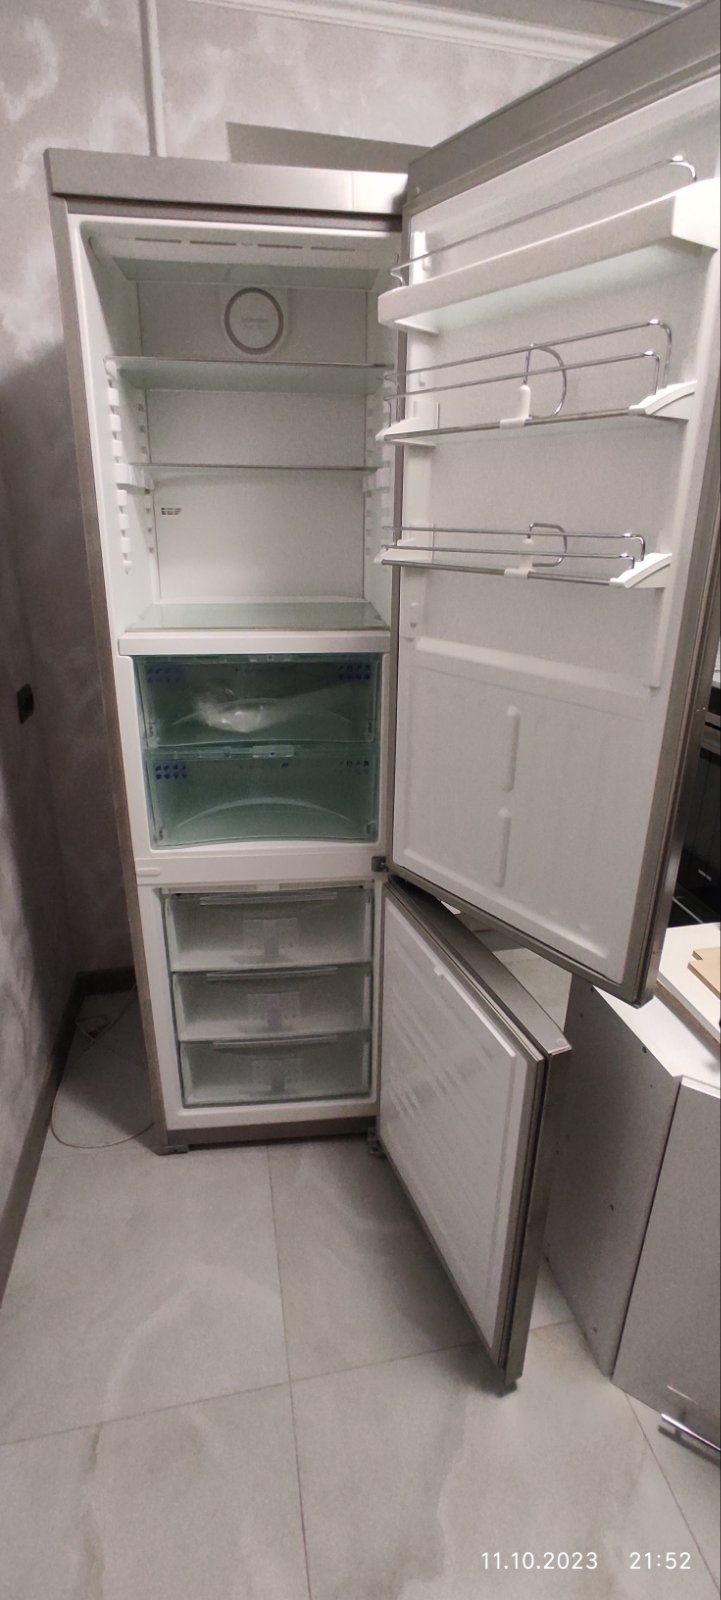 Продам холодильник ЛИБХЕРР